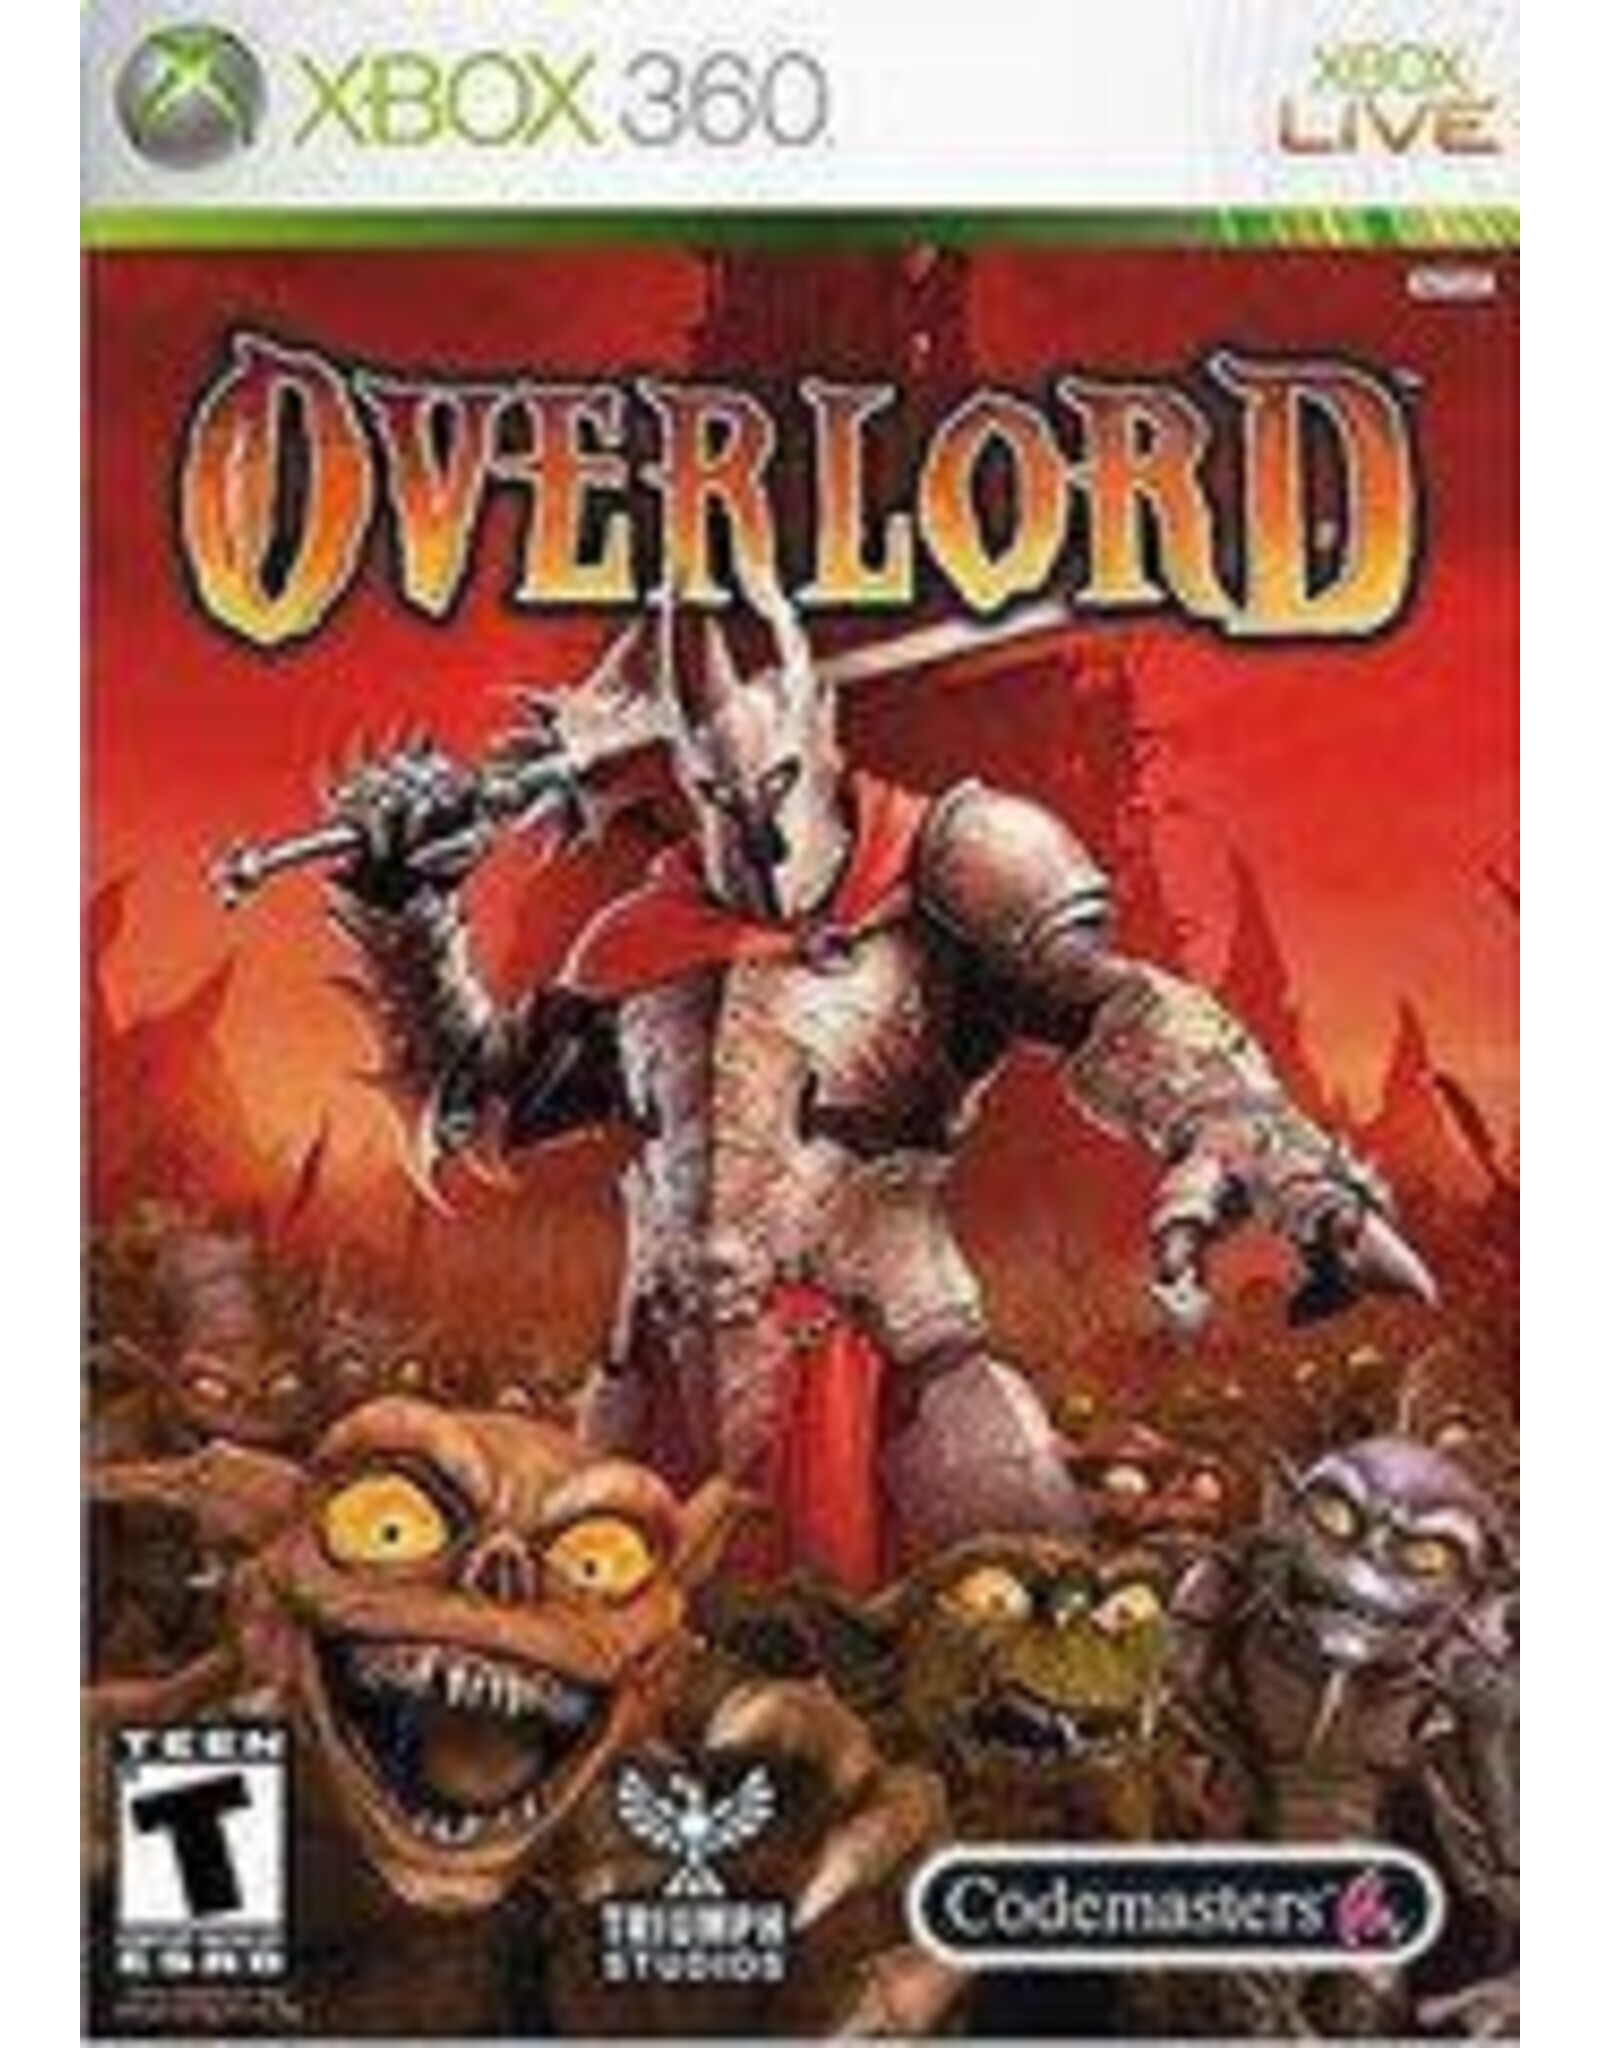 Xbox 360 Overlord (CiB)